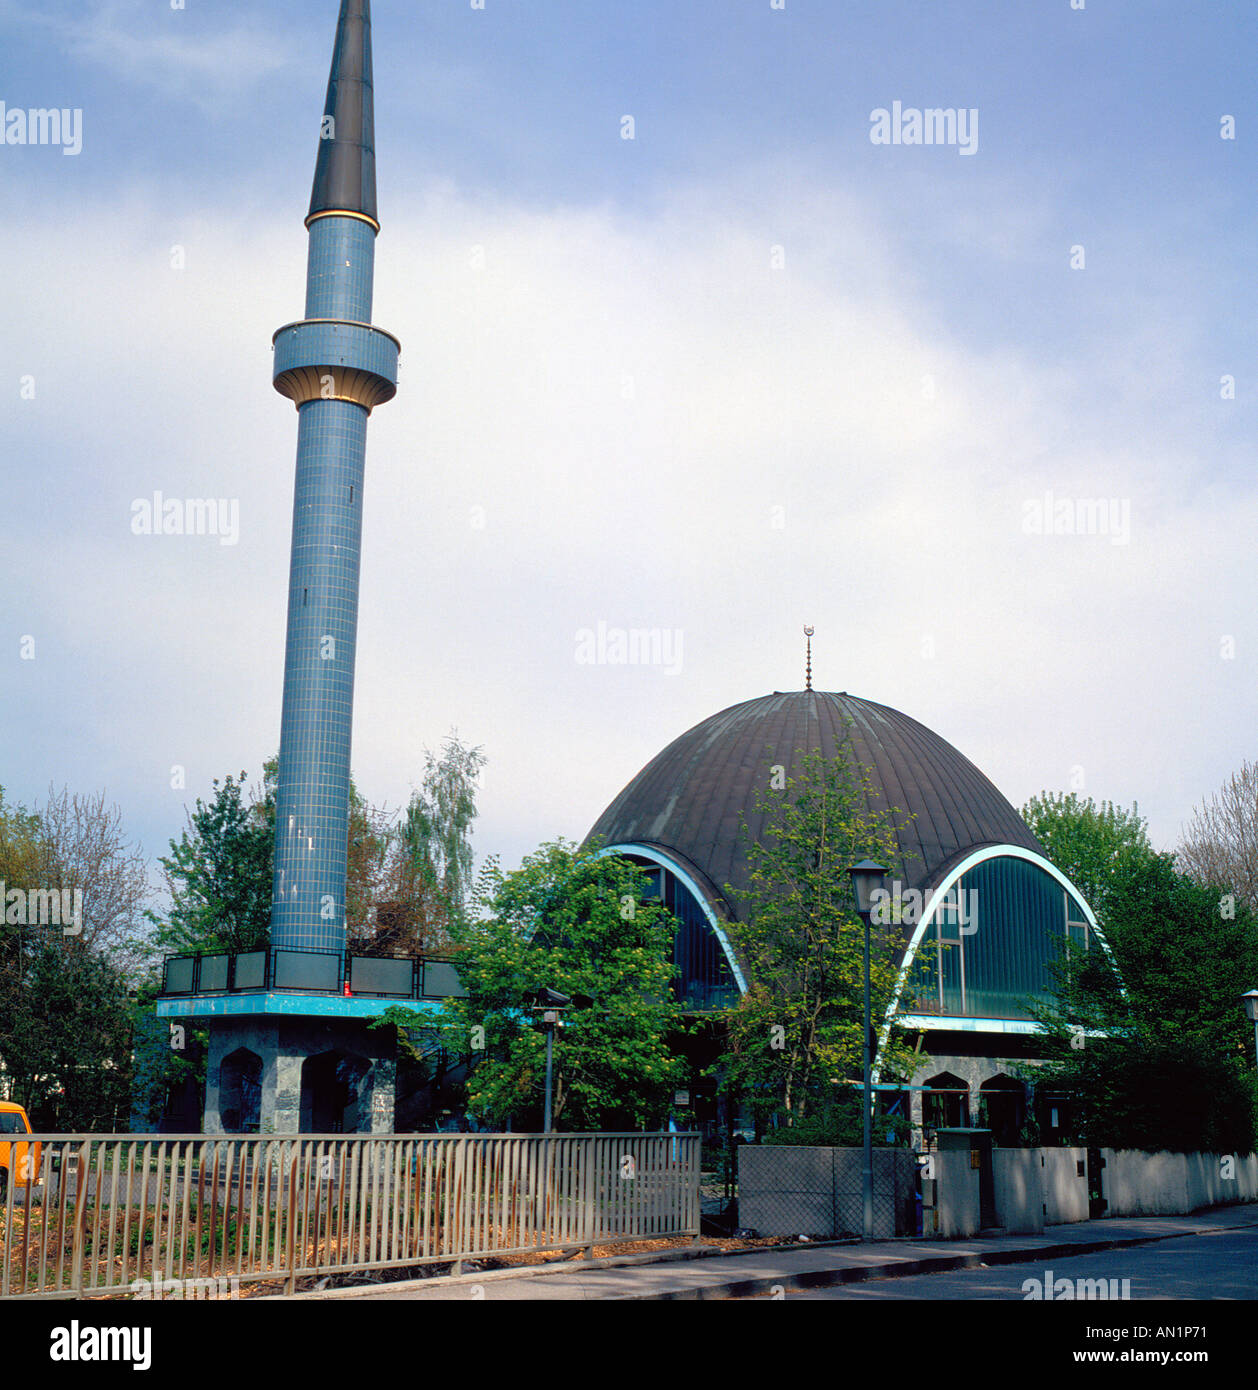 Islamisches Zentrum Munich north Bavaria Germany Europe. Photo by Willy Matheisl Stock Photo